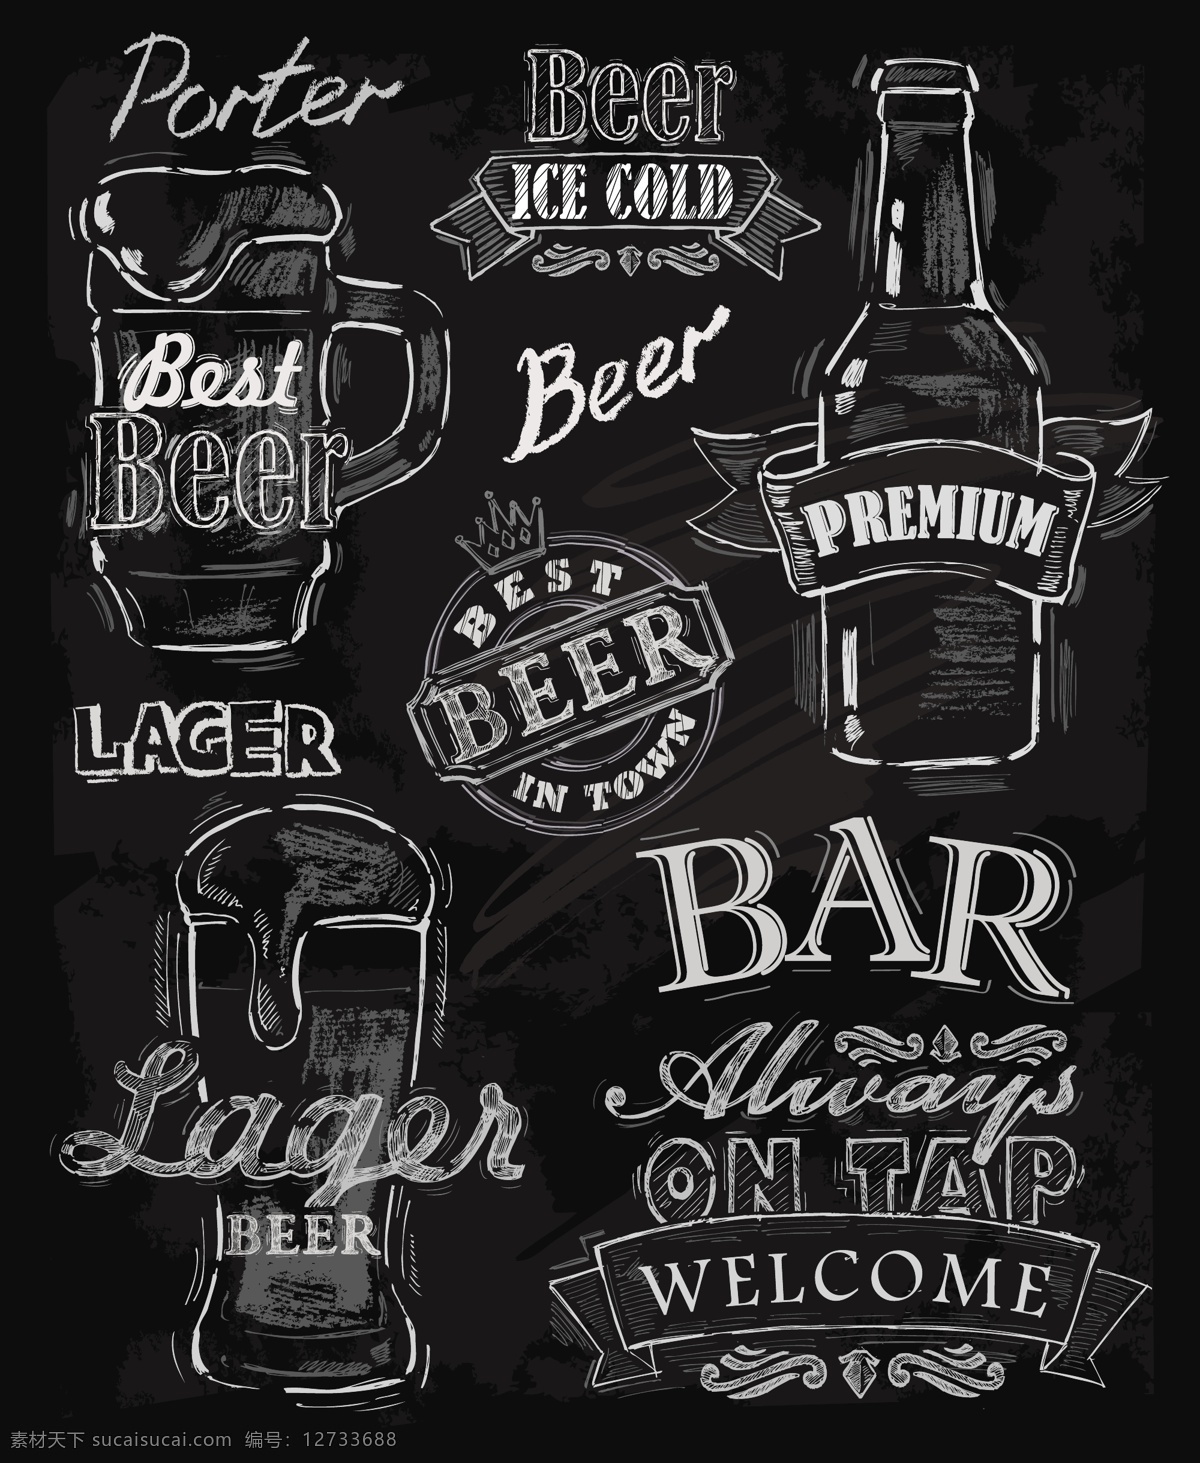 西餐厅 黑板 背景 粉笔 字画 菜单 矢量 酒杯 简约 卡通 设计素材 粉笔字 平面素材